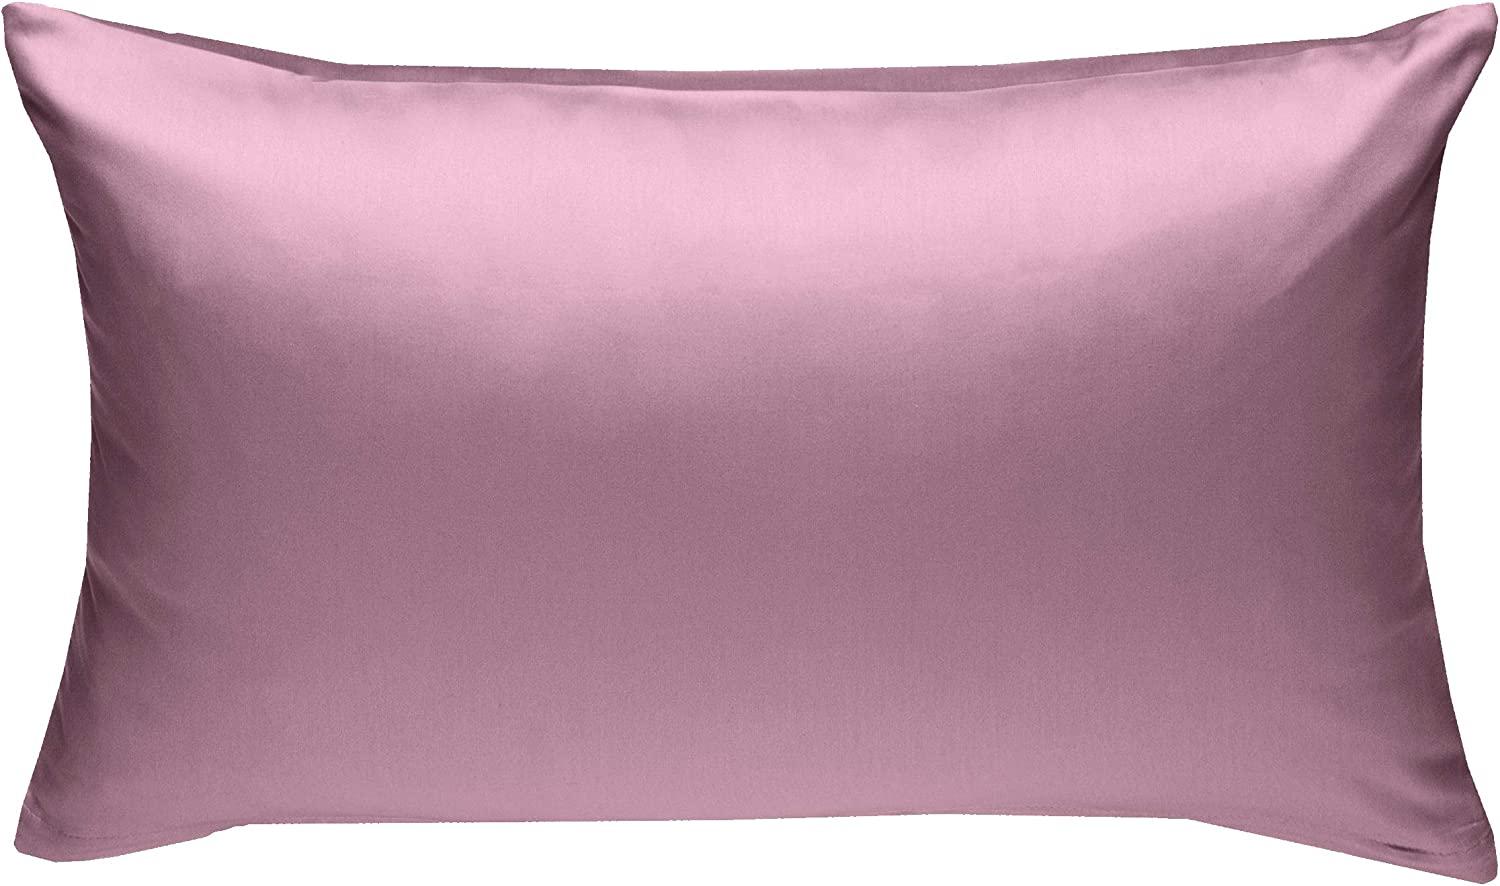 Bettwaesche-mit-Stil Mako-Satin / Baumwollsatin Bettwäsche uni / einfarbig rosa Kissenbezug 40x60 cm Bild 1